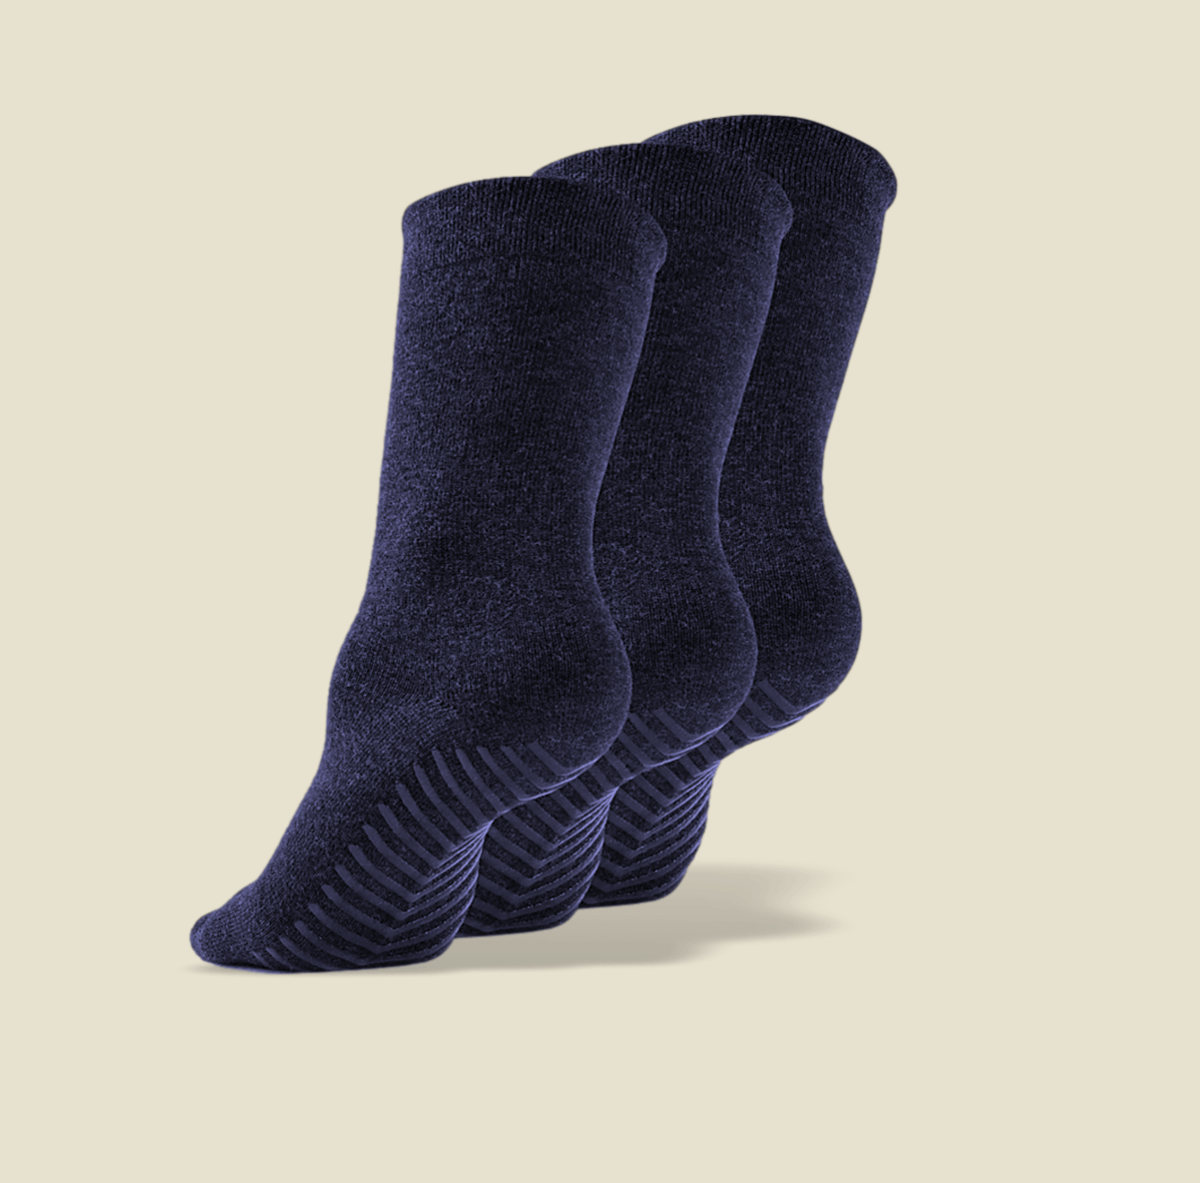 Buy Gripjoy Original Crew Grip Socks - Non Slip Socks for Women